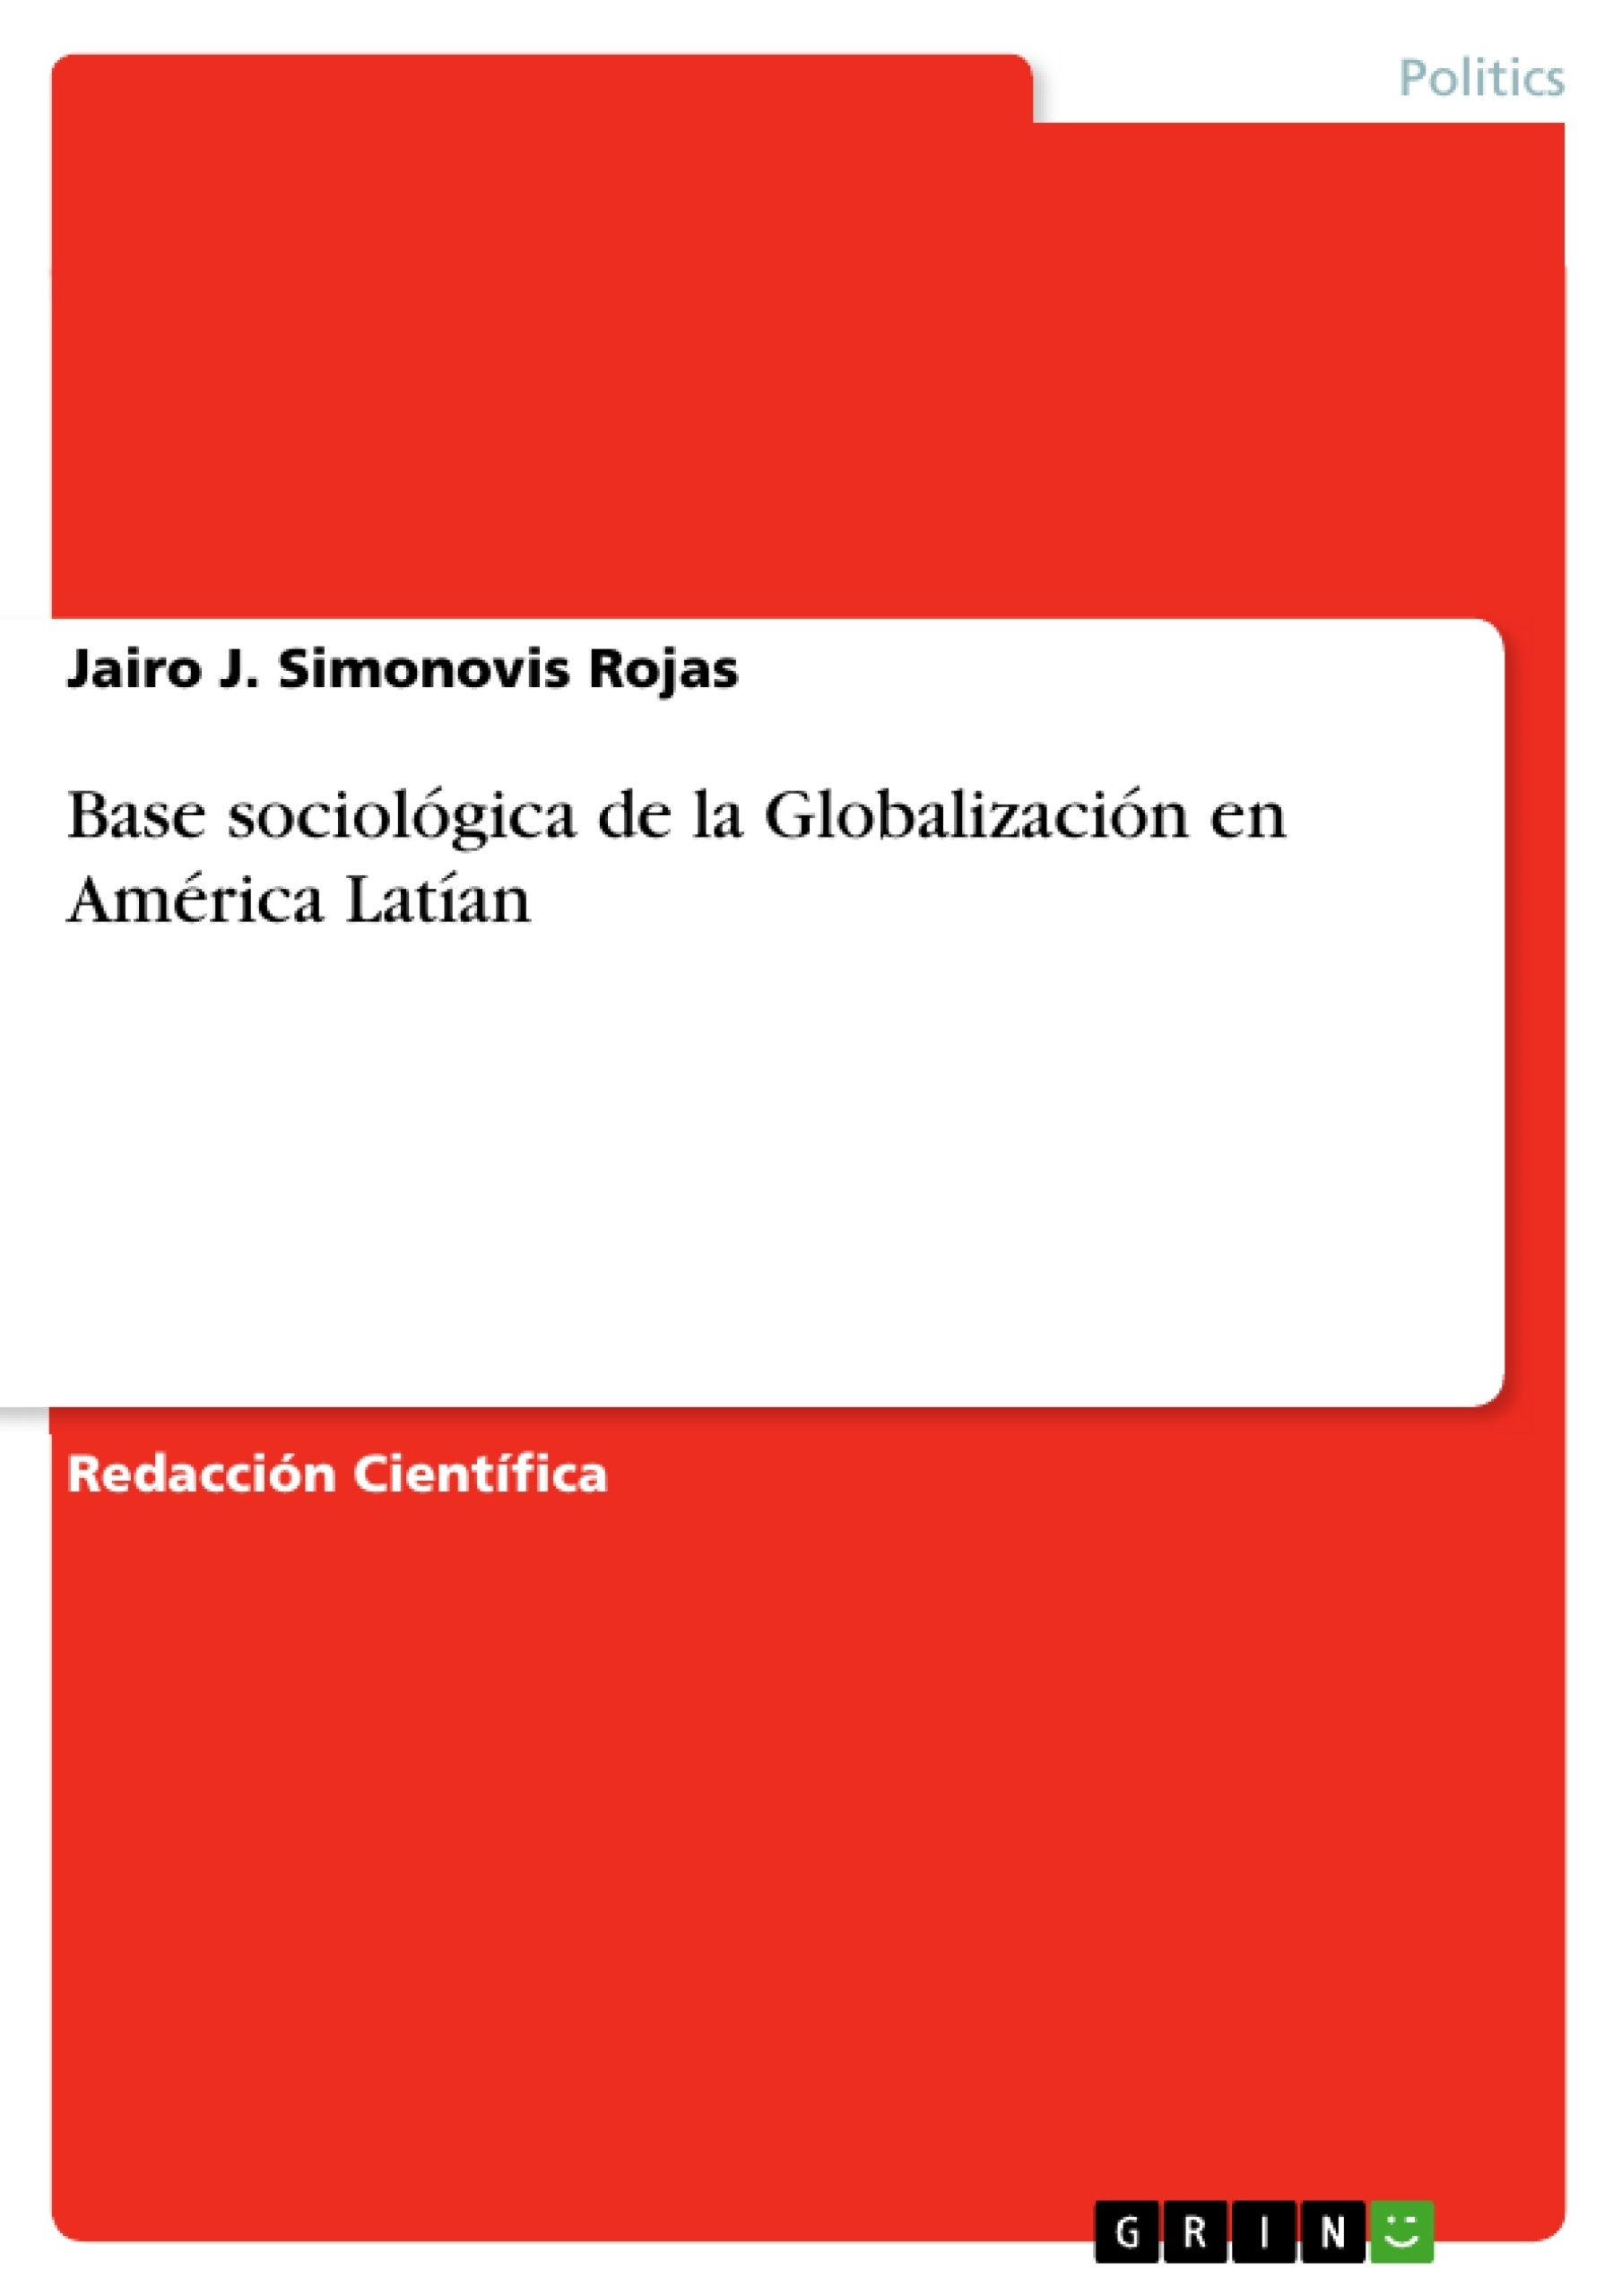 Título: Base sociológica de la Globalización en América Latían